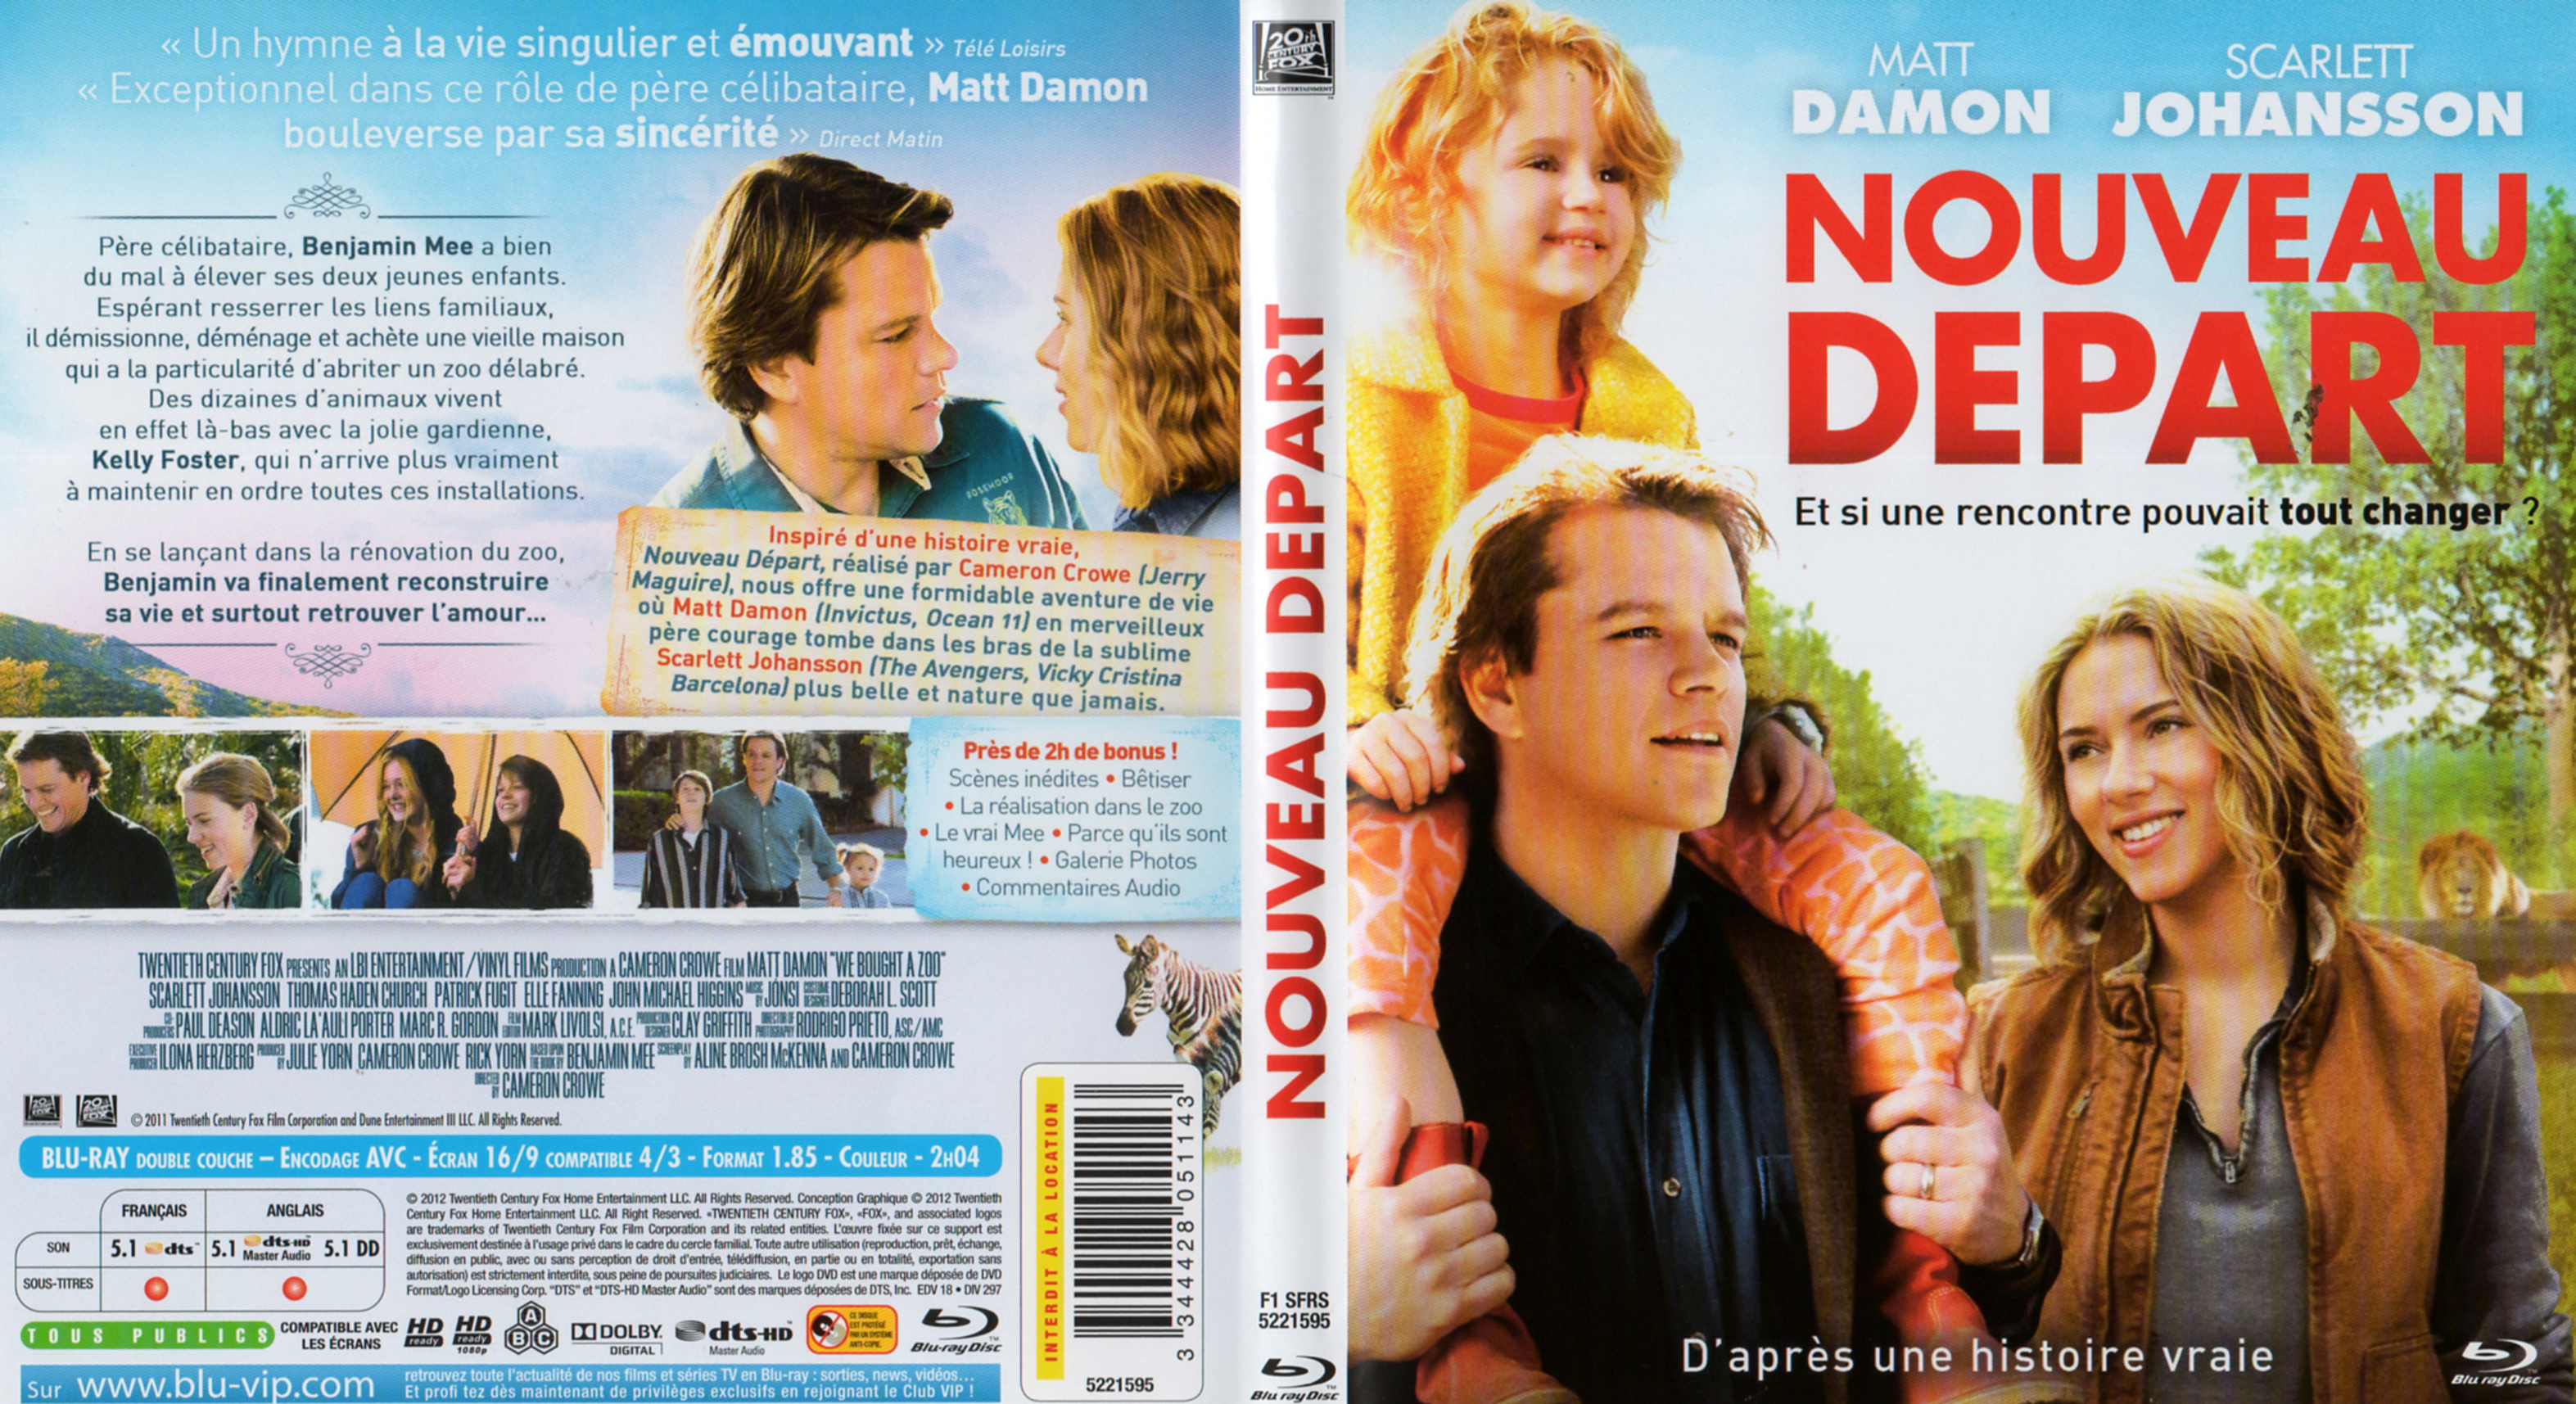 Jaquette DVD Nouveau Dpart (BLU-RAY)